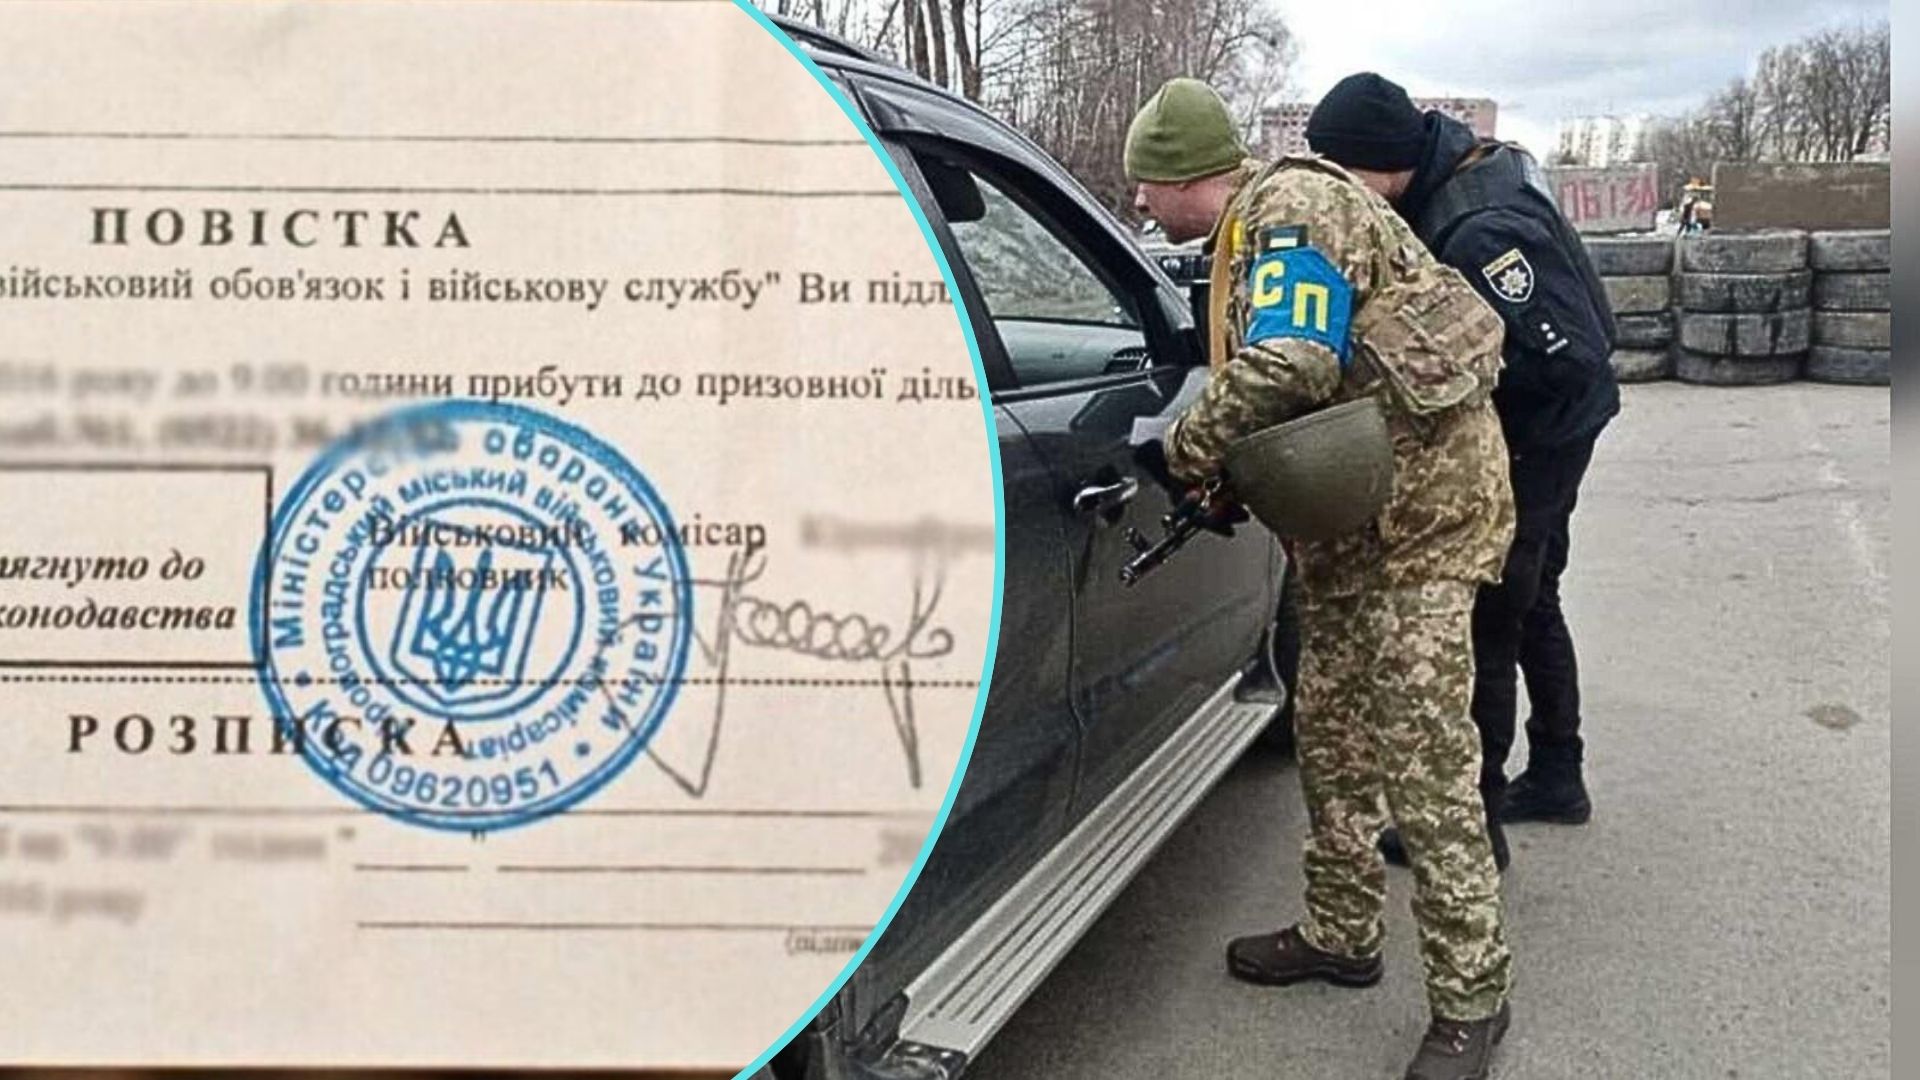 Напередодні новорічних свят Національна поліція України посилює заходи безпеки по всій країні.